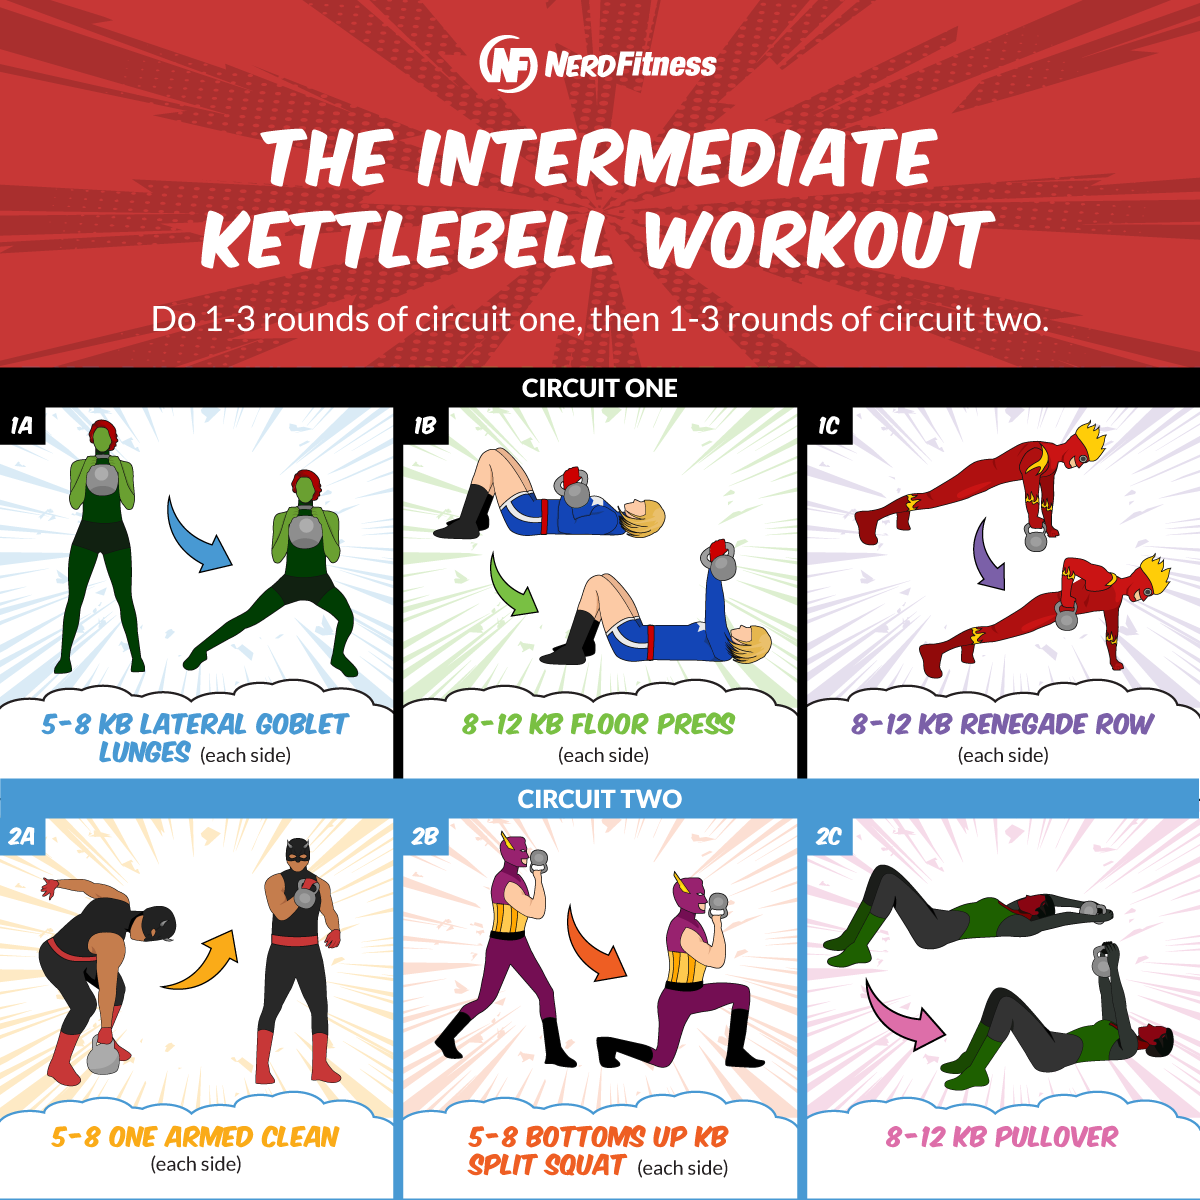 Kettlebell workouts